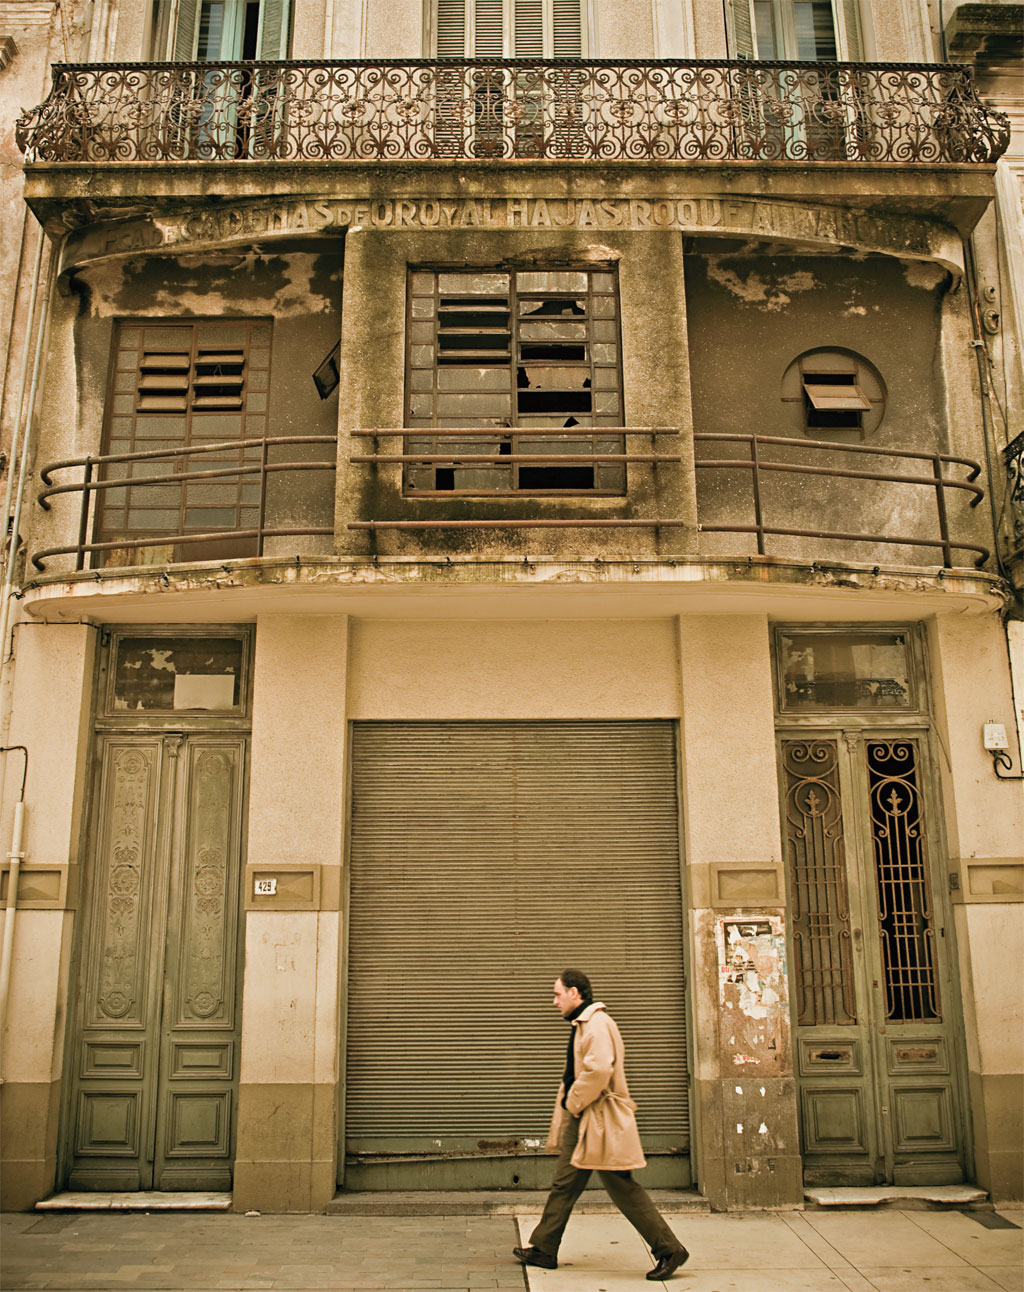 Construtivismo: uma história por trás da fachada simétrica e gris da Ciudad Vieja; ao caminhar, olhe para cima